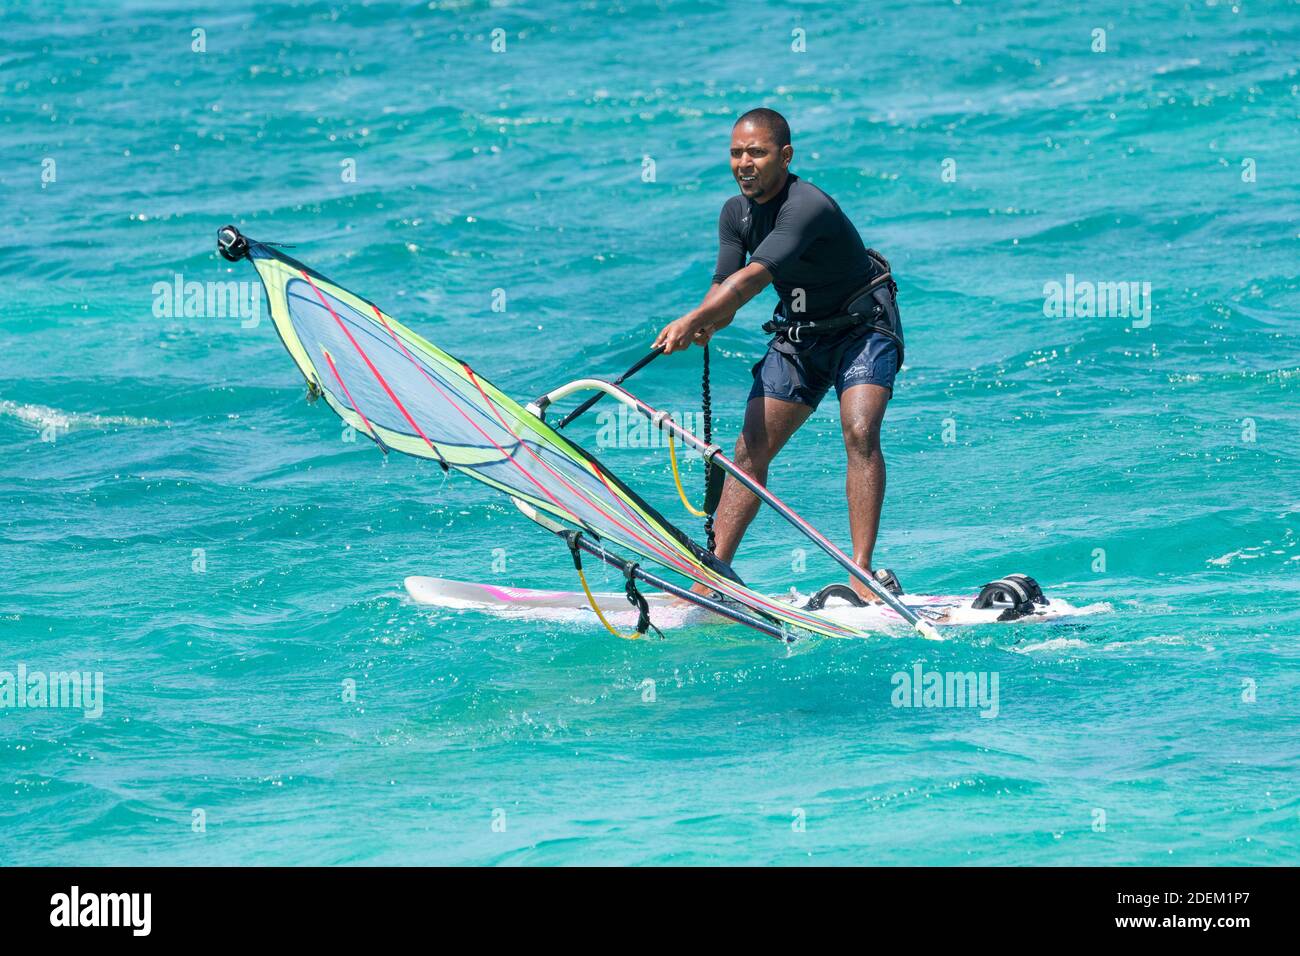 Windsurf in una muta che tira su una vela dalle acque turchesi blu del mare sull'isola tropicale di Mauritius concetto di stile di vita sport, ricreazione Foto Stock